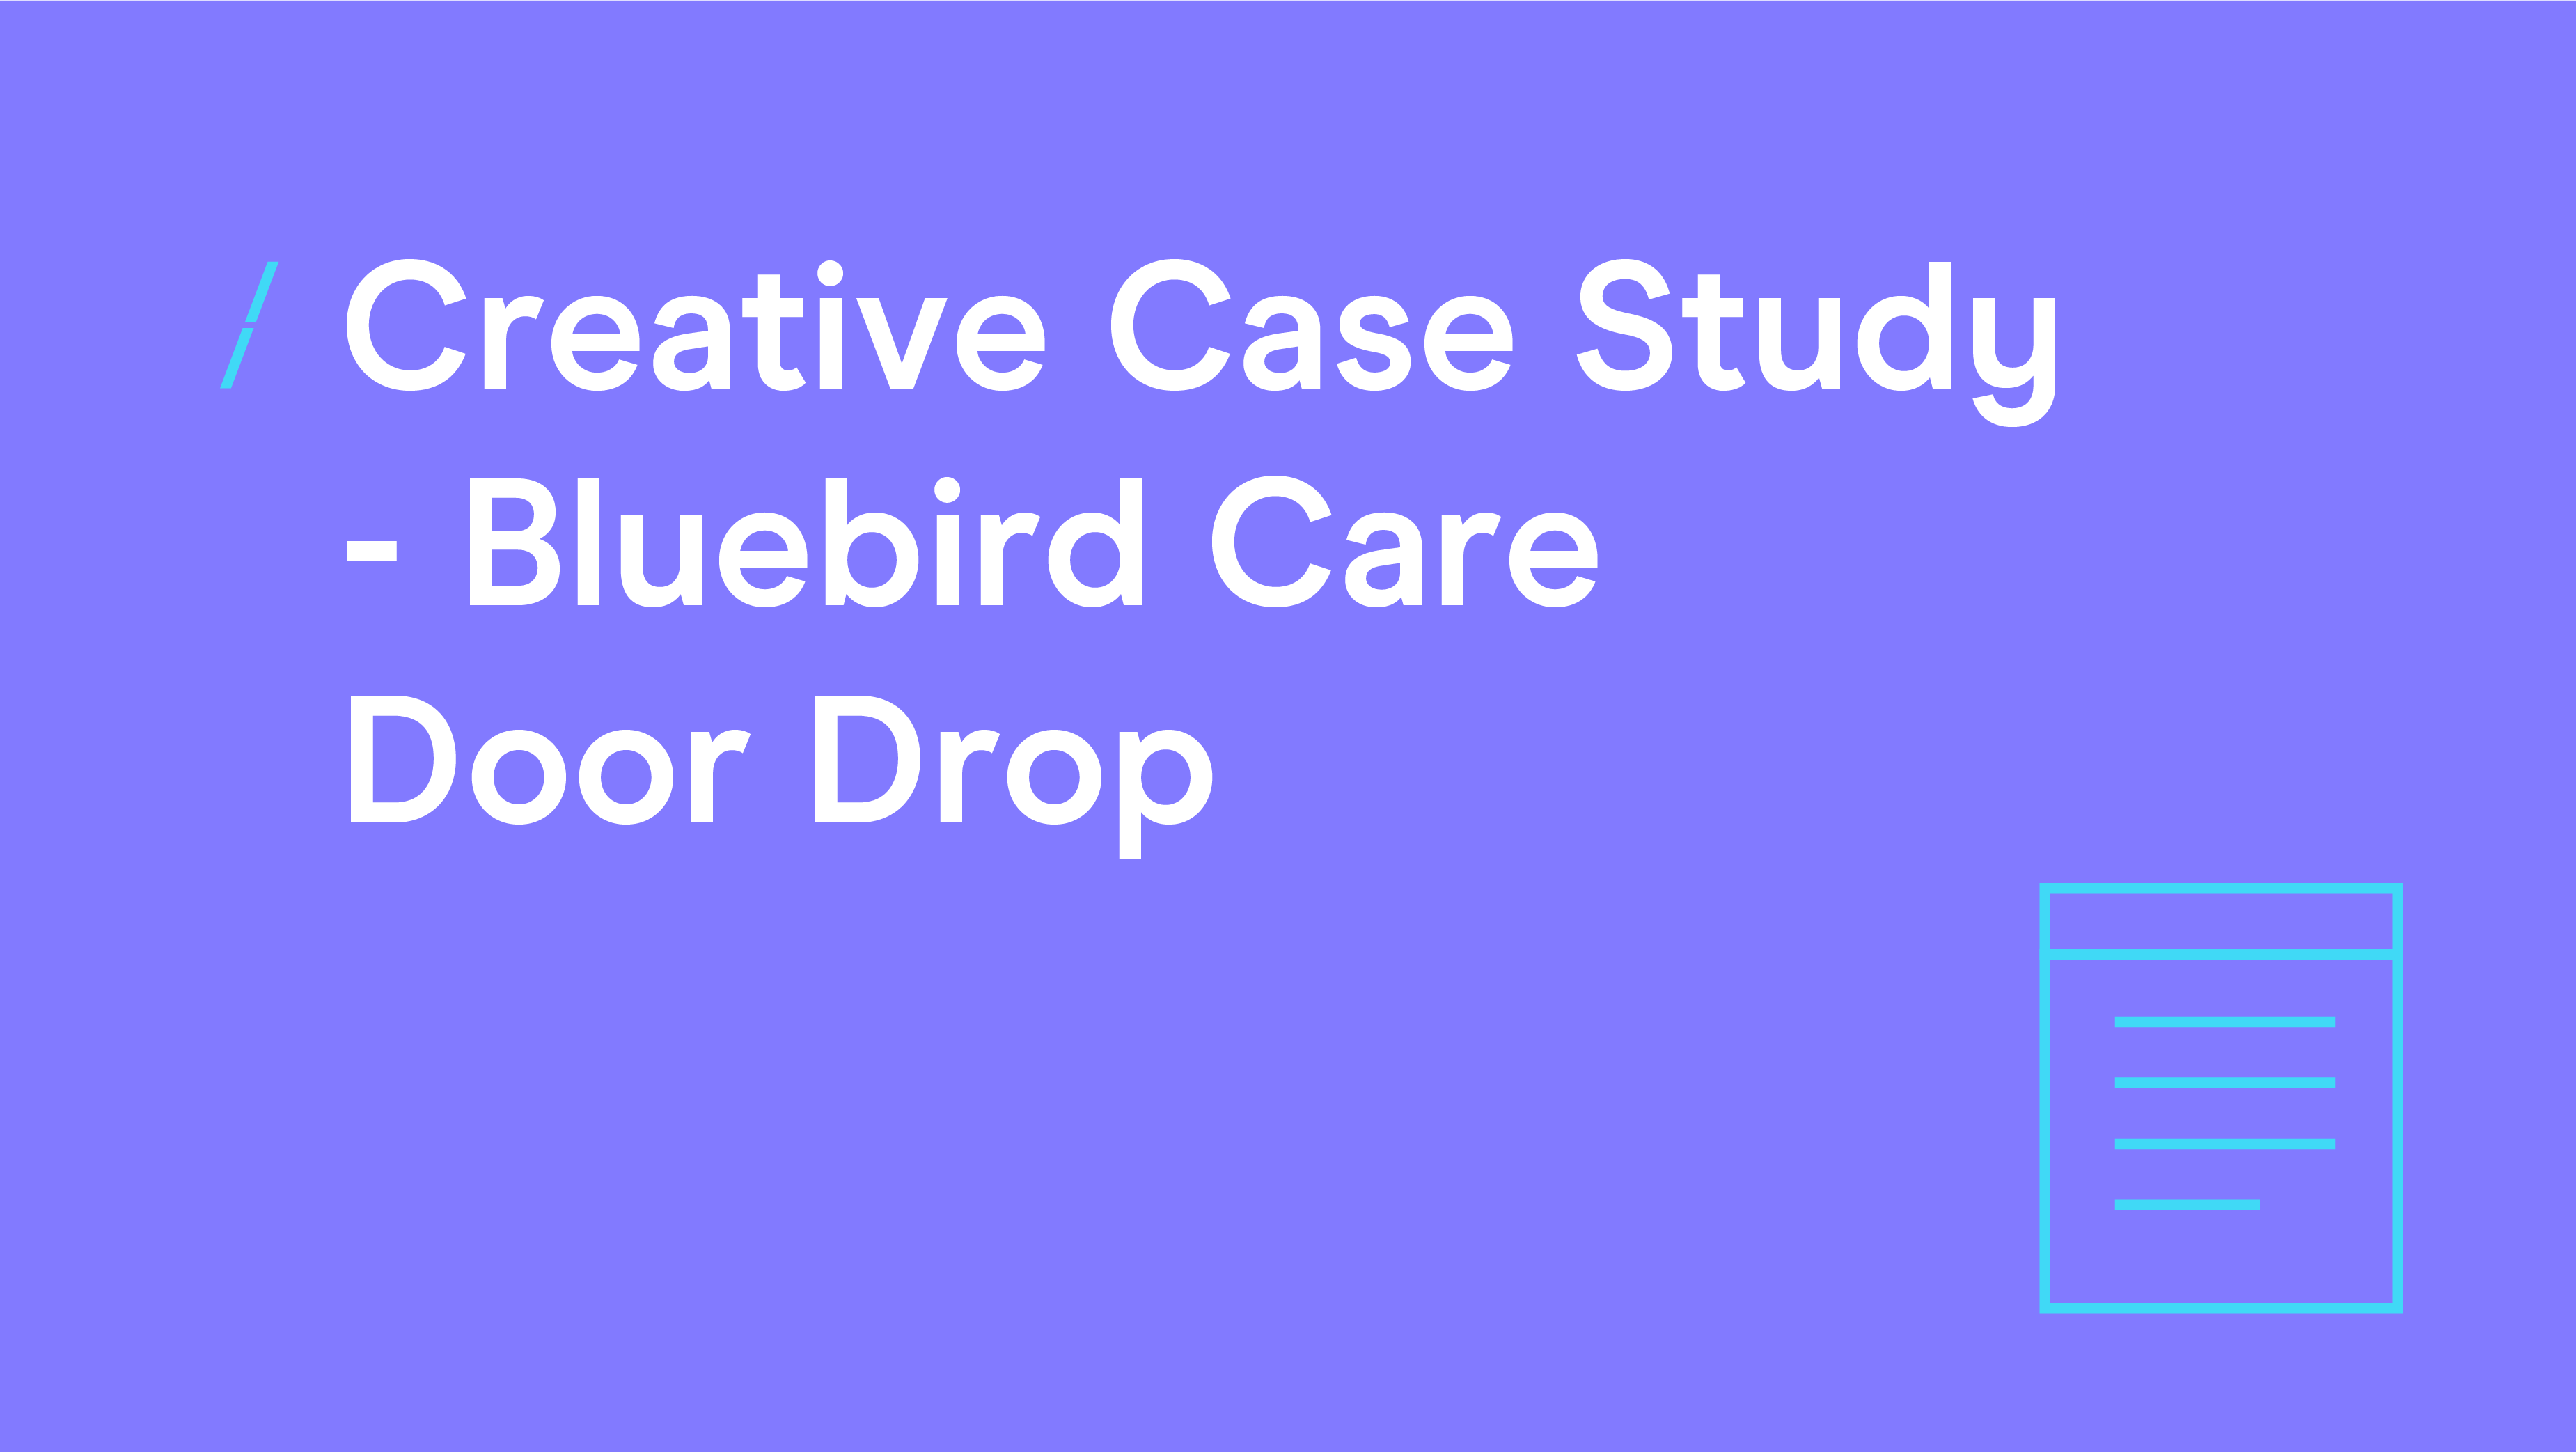 Creative Case Study - Bluebird Care Door Drop_Events copy 4_Events copy 4 (002).png